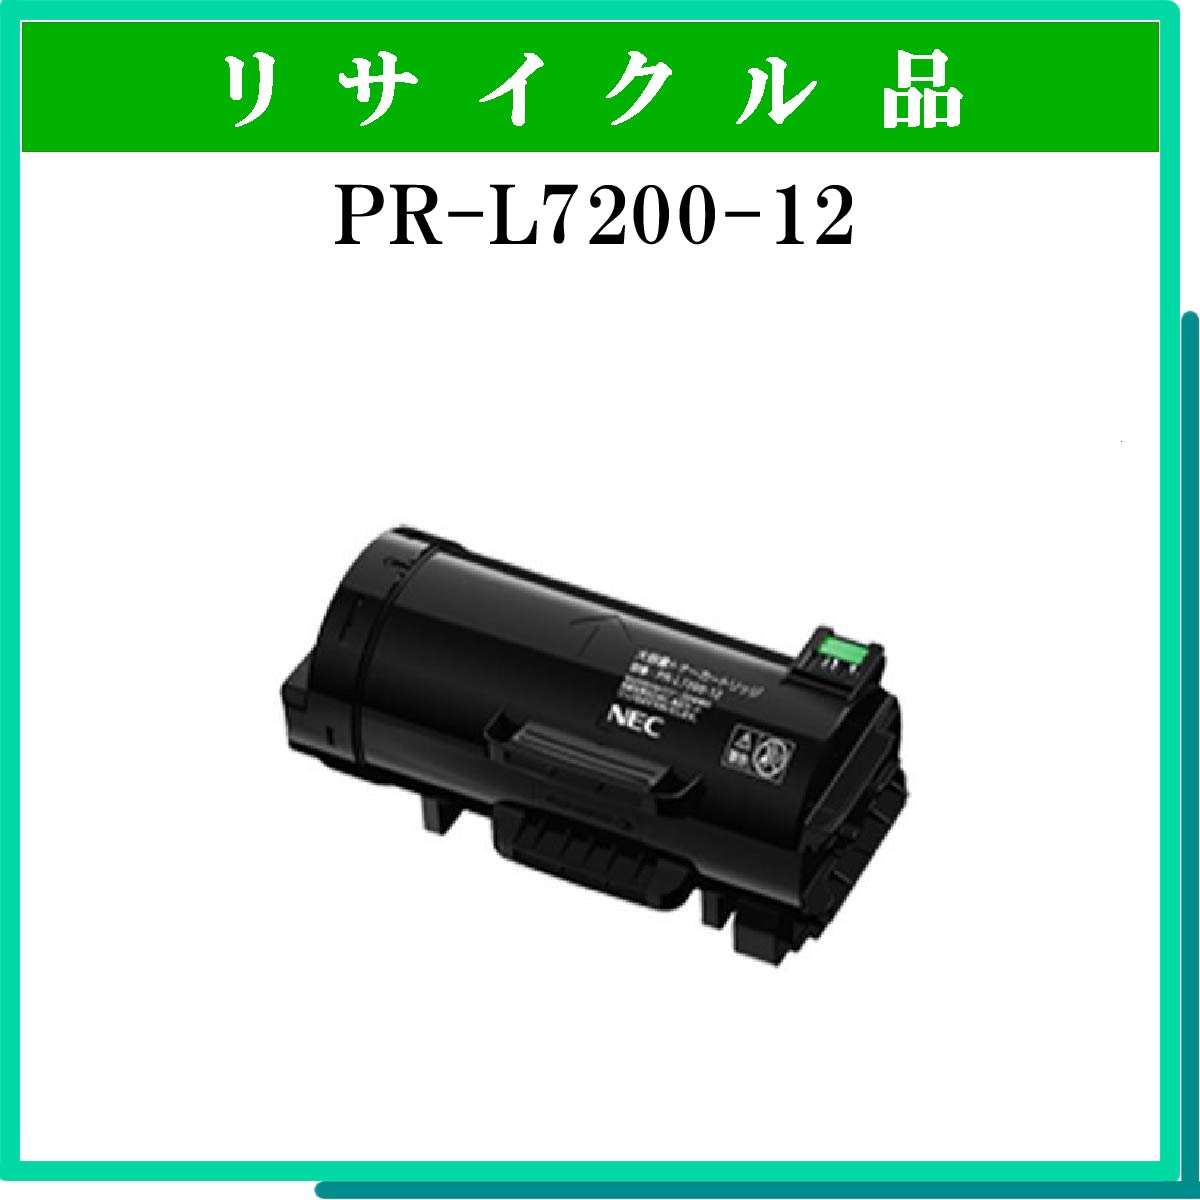 PR-L7200-12